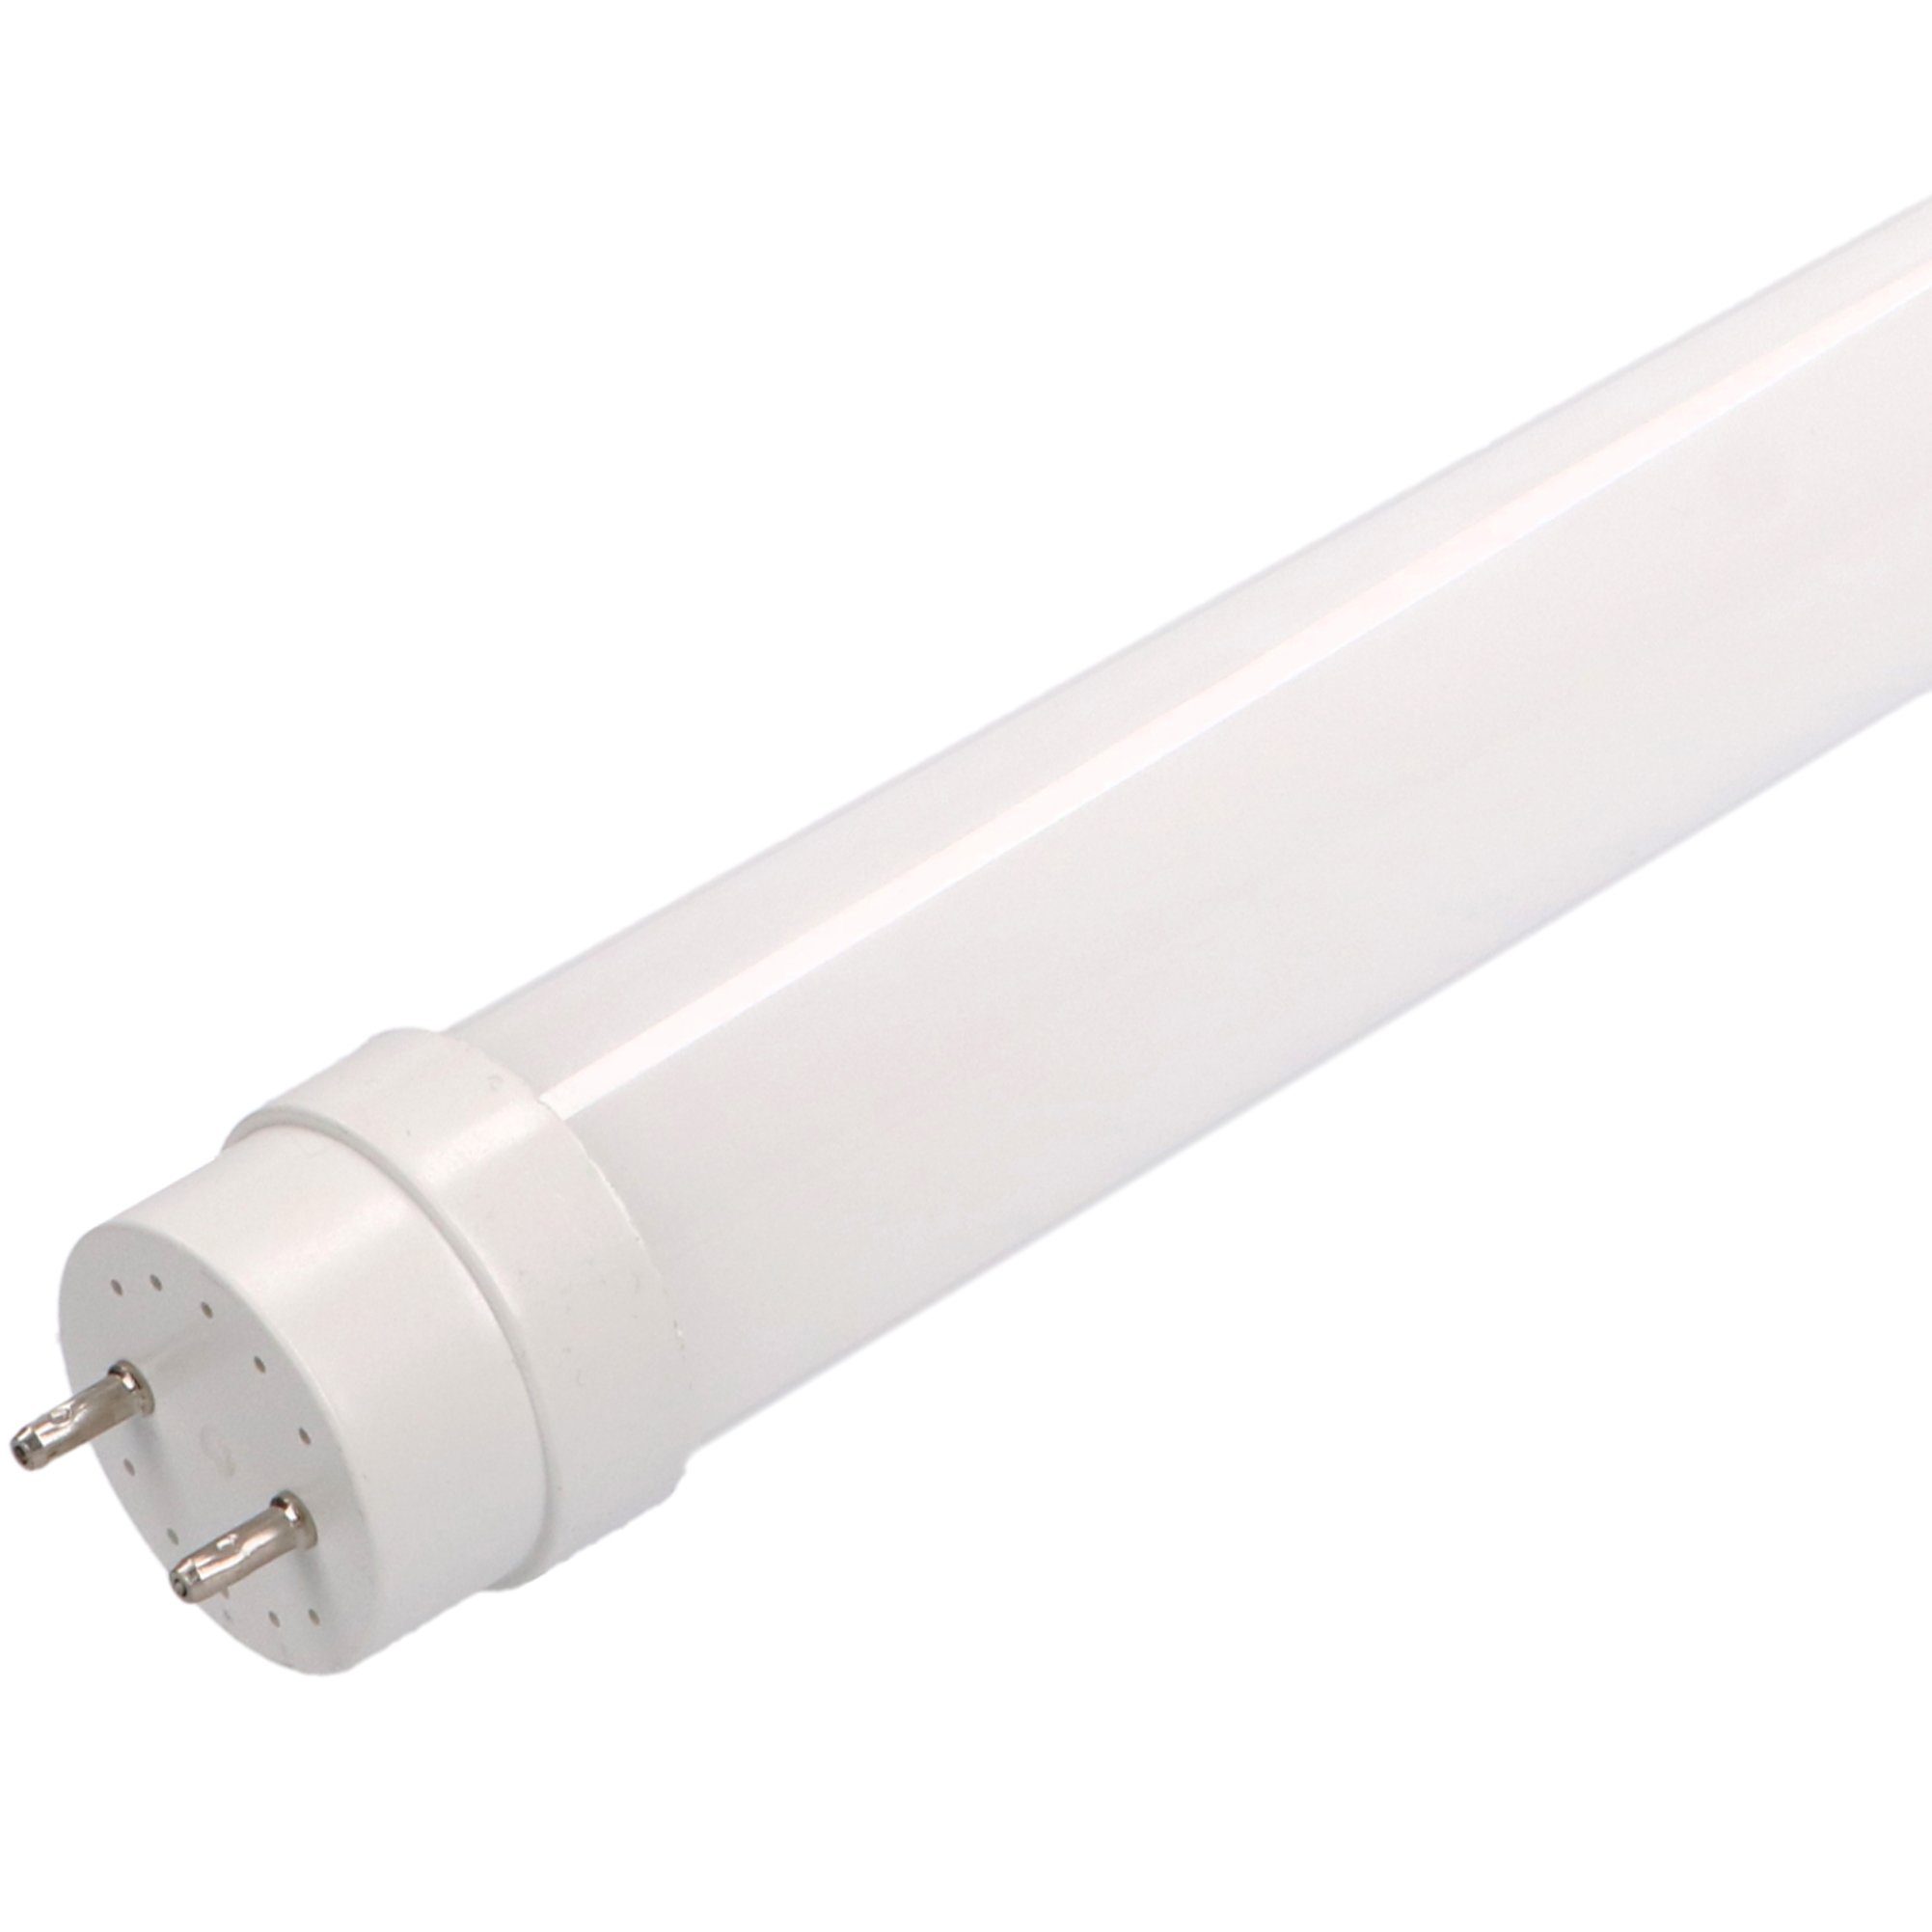 LED's light Basic LED-Leuchtmittel 0610720 LED-Röhre, 60 cm 9 Watt warmweiß G13 mit Starter für KVG/VVG